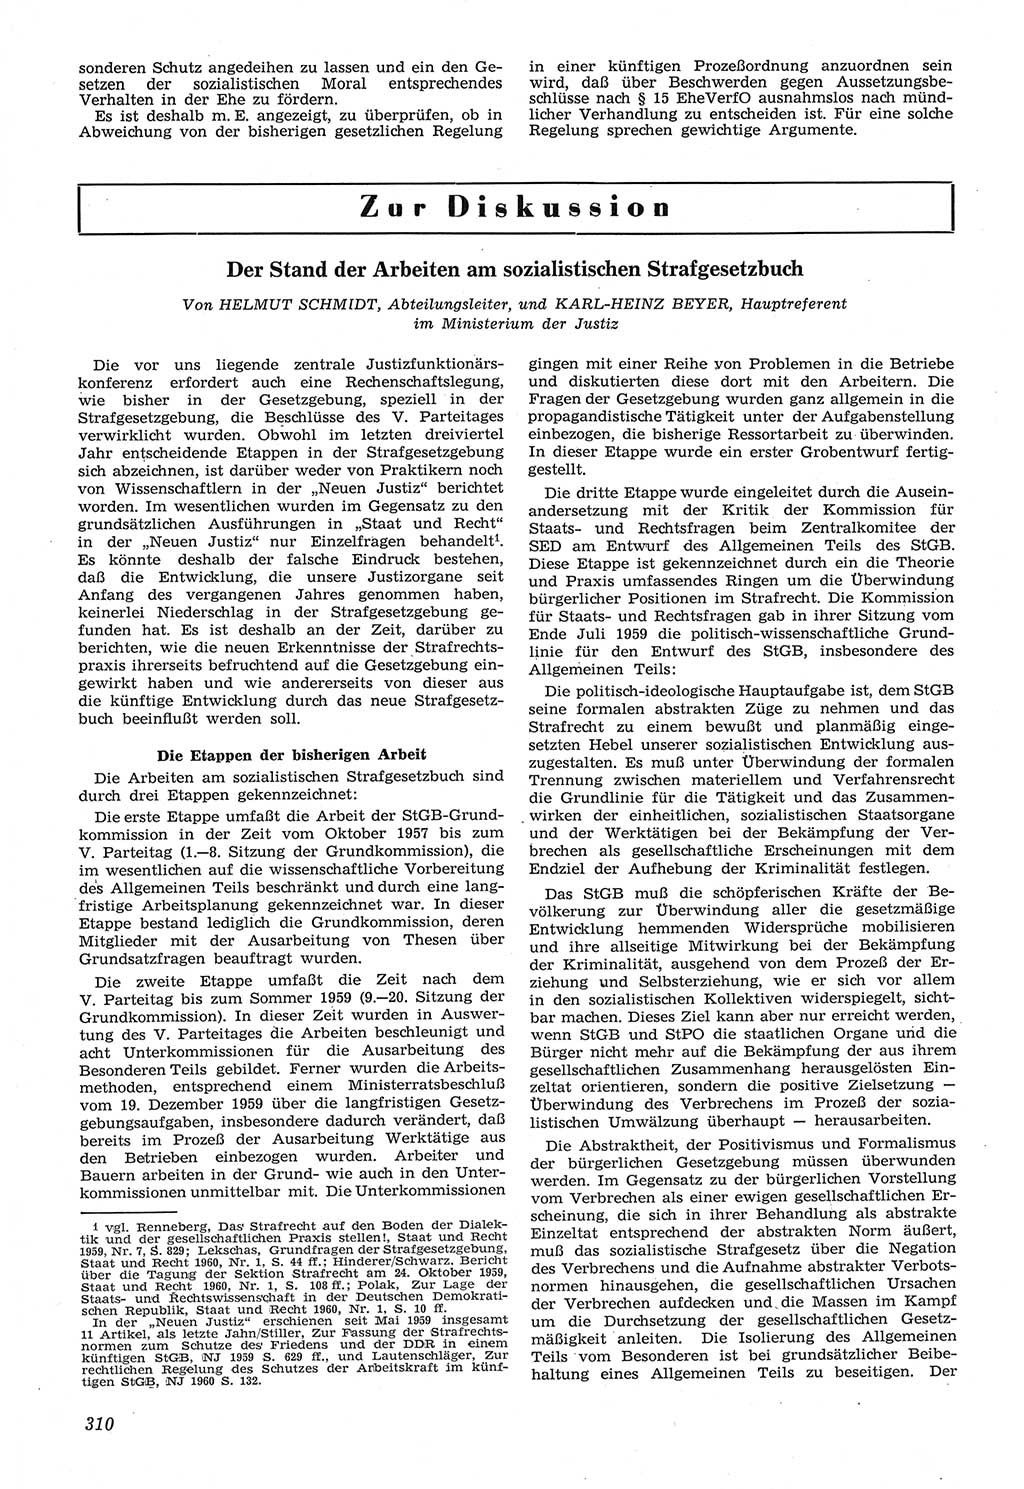 Neue Justiz (NJ), Zeitschrift für Recht und Rechtswissenschaft [Deutsche Demokratische Republik (DDR)], 14. Jahrgang 1960, Seite 310 (NJ DDR 1960, S. 310)